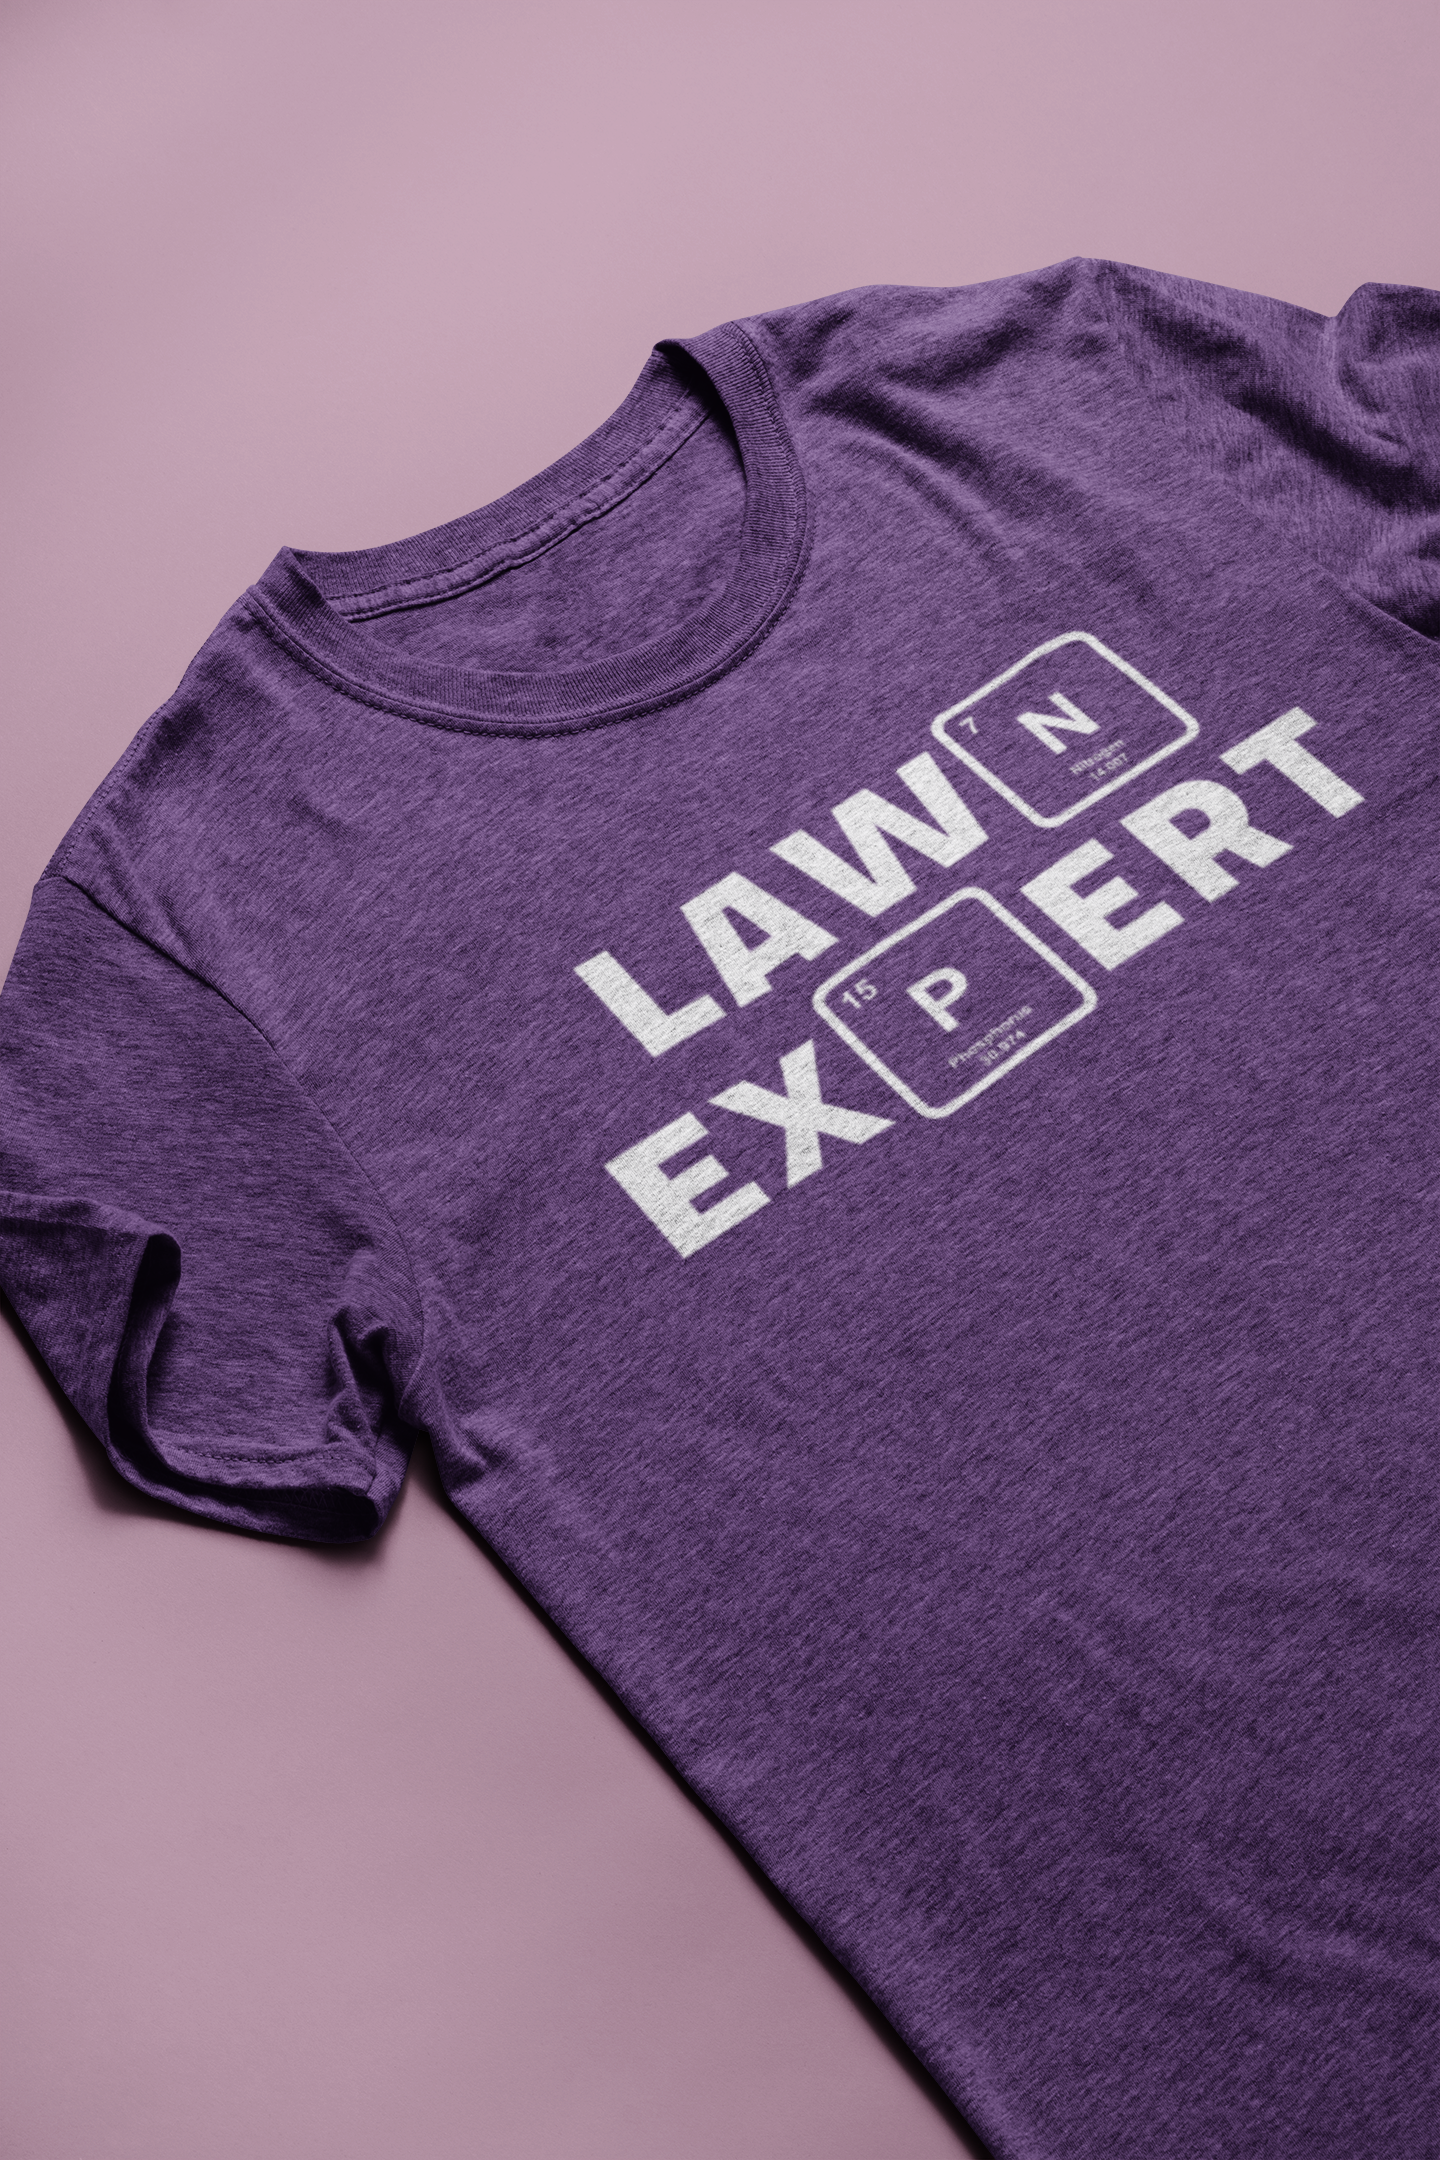 Lawn Expert Short Sleeve T-Shirt